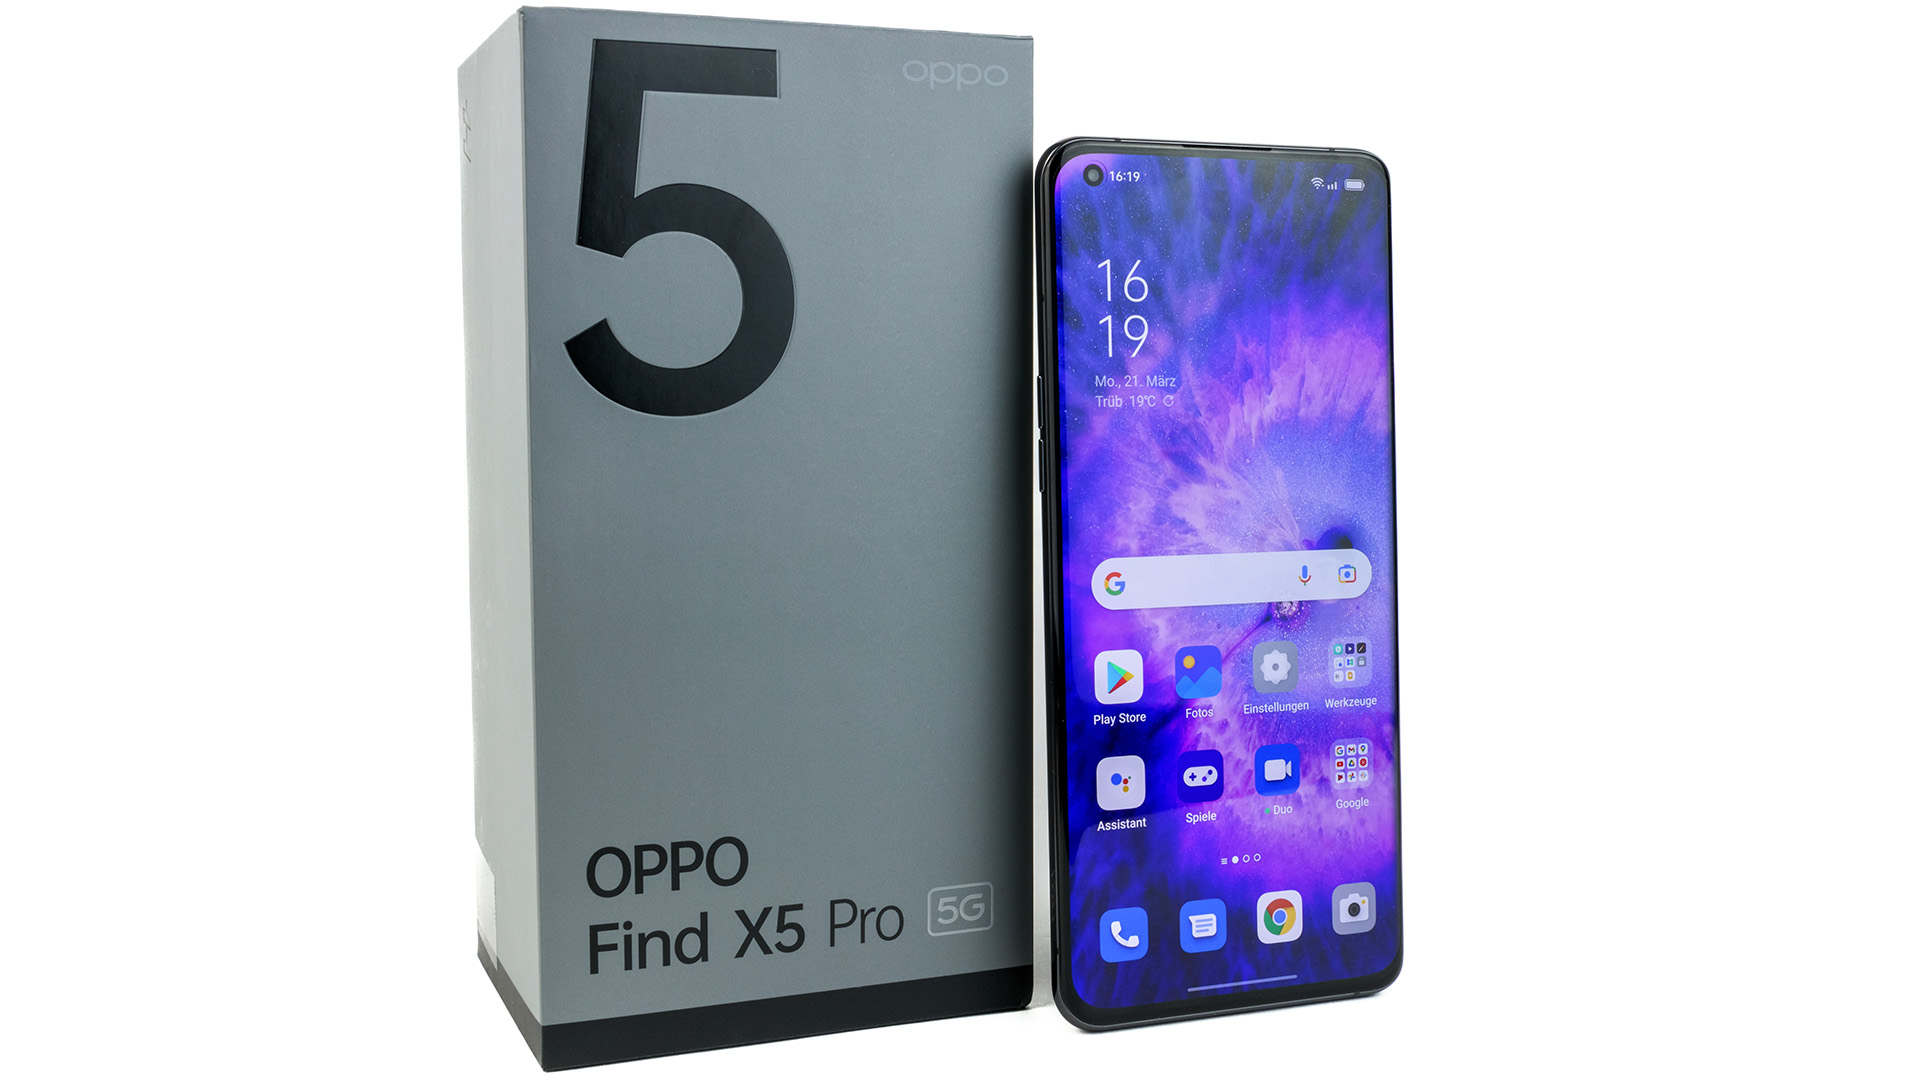 Bạn đang tìm kiếm một điện thoại sang trọng và hiệu năng cao? Oppo Find X5 Pro có thể là sự lựa chọn tuyệt vời cho bạn. Đừng bỏ lỡ cơ hội đọc những đánh giá tuyệt vời về sản phẩm này!